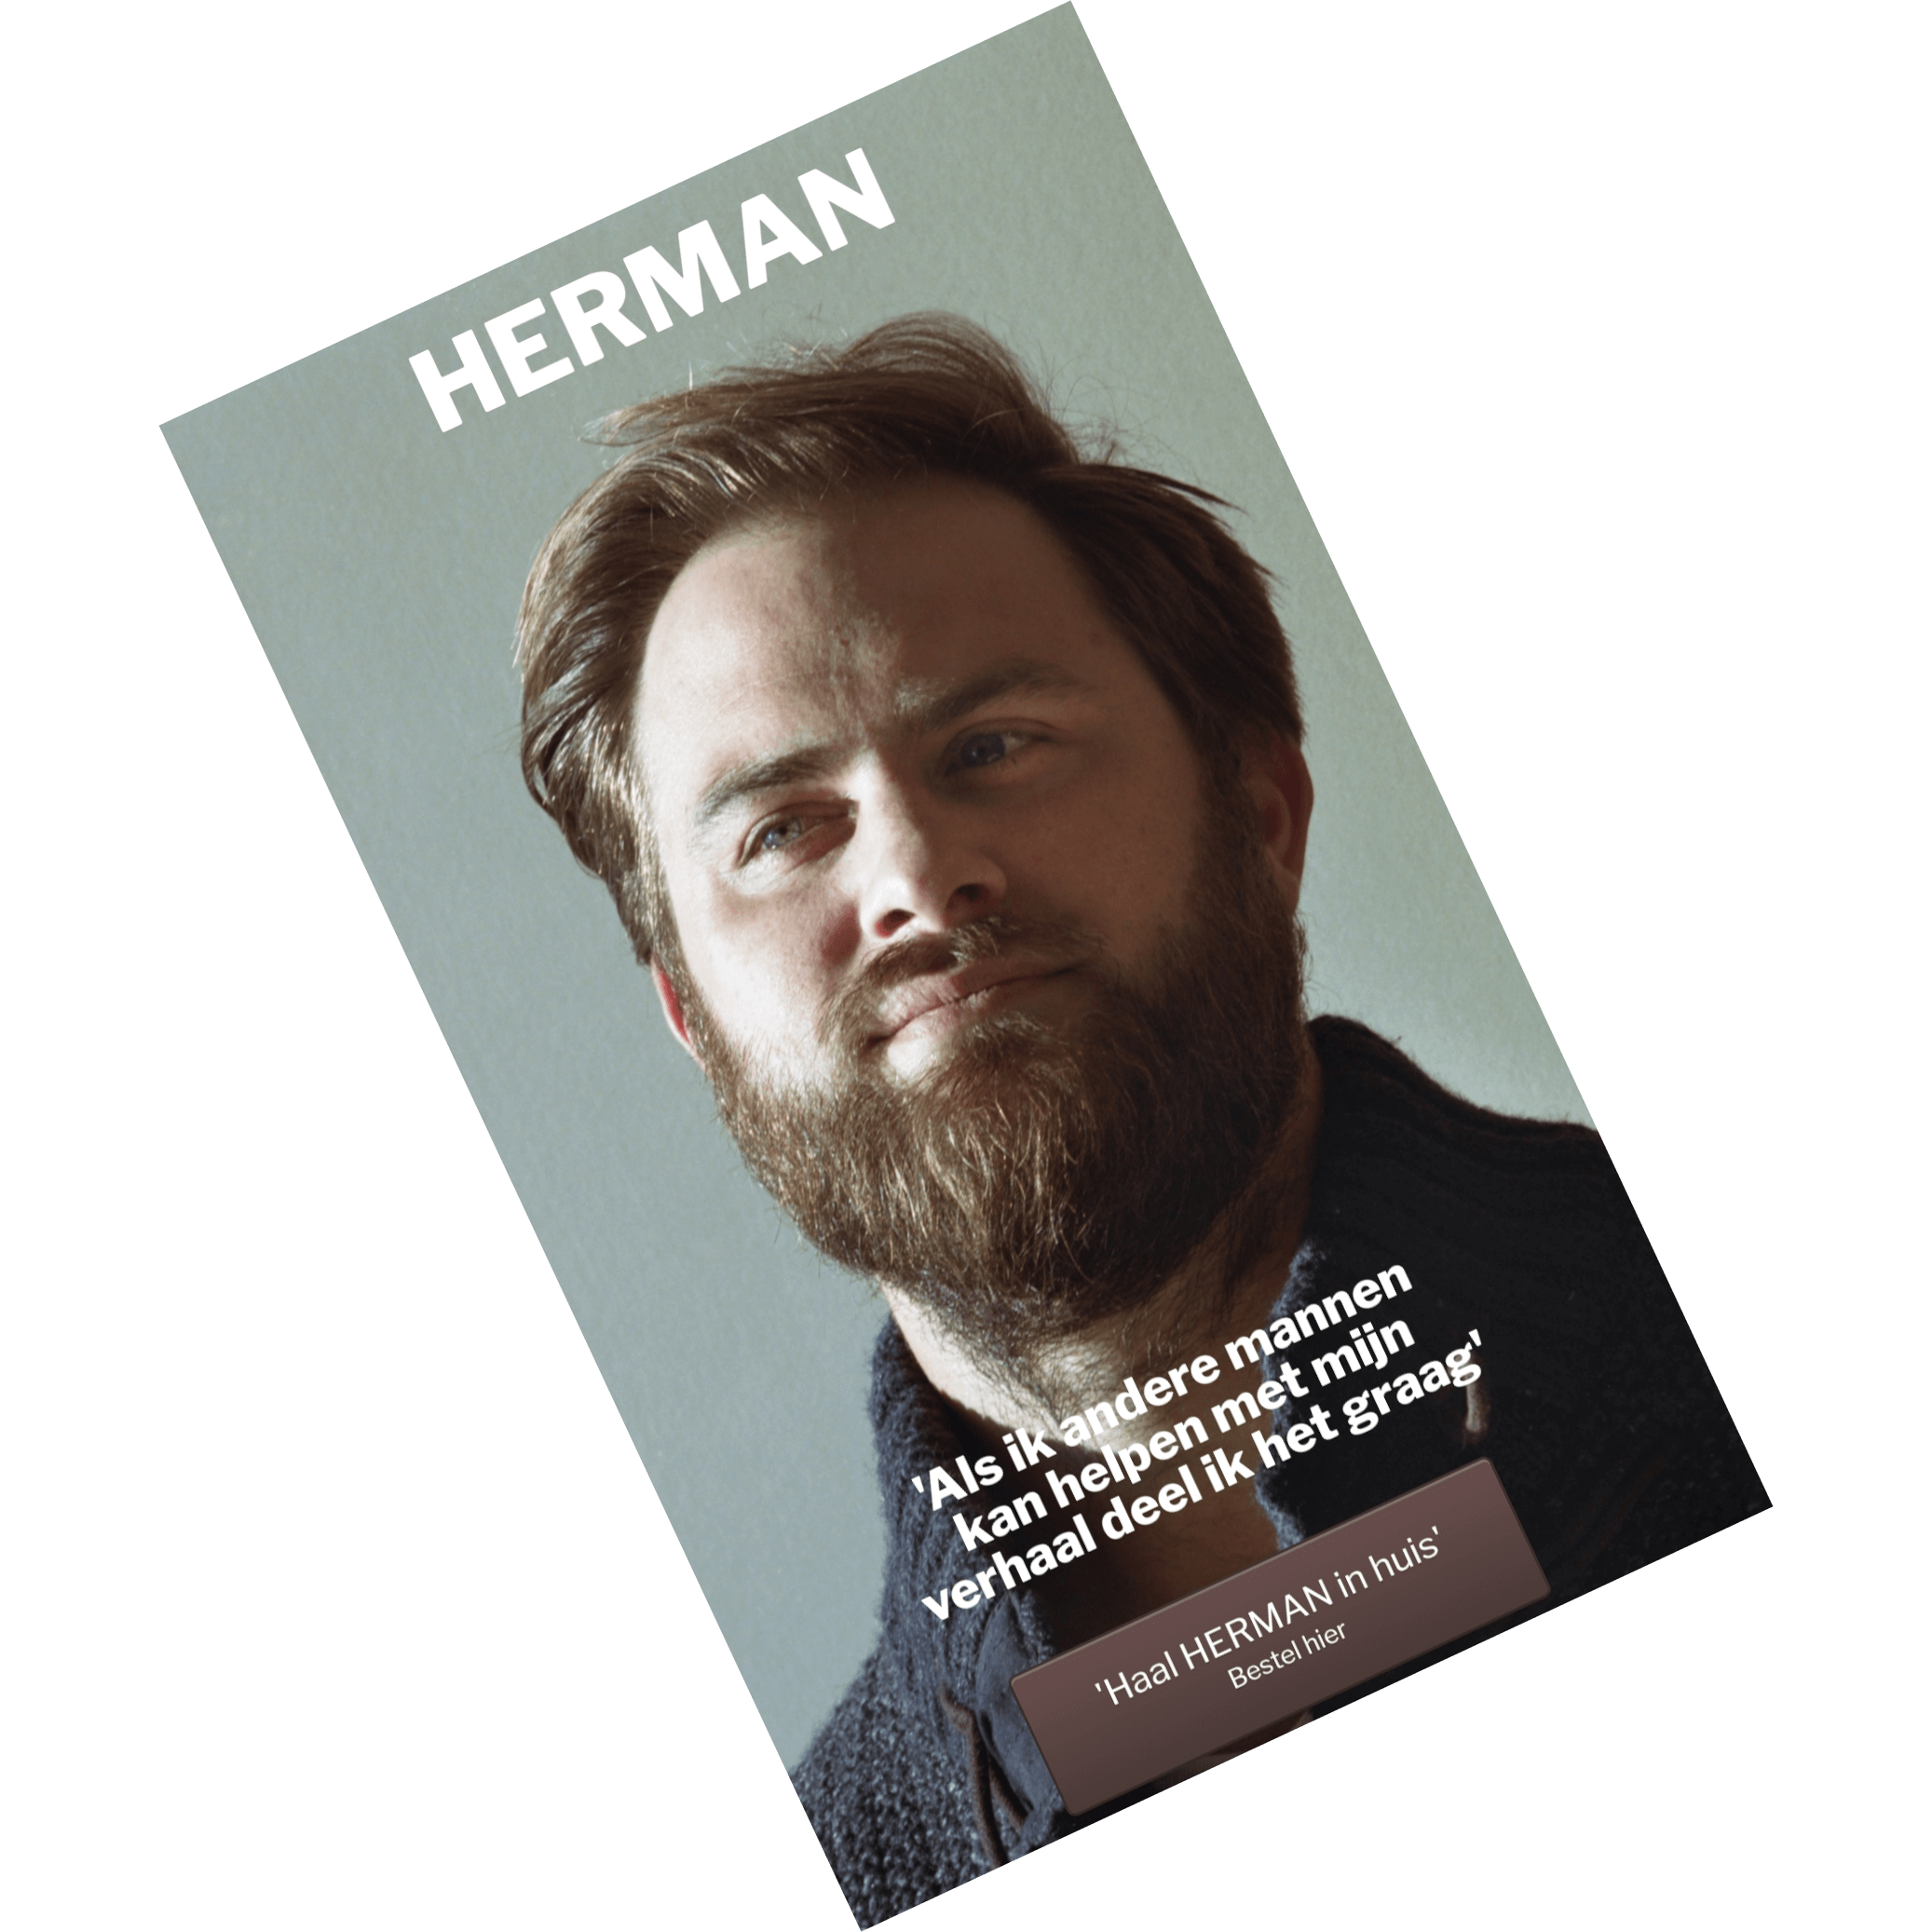 Herman Magazine gaat over medisch gebruikt van testosteron